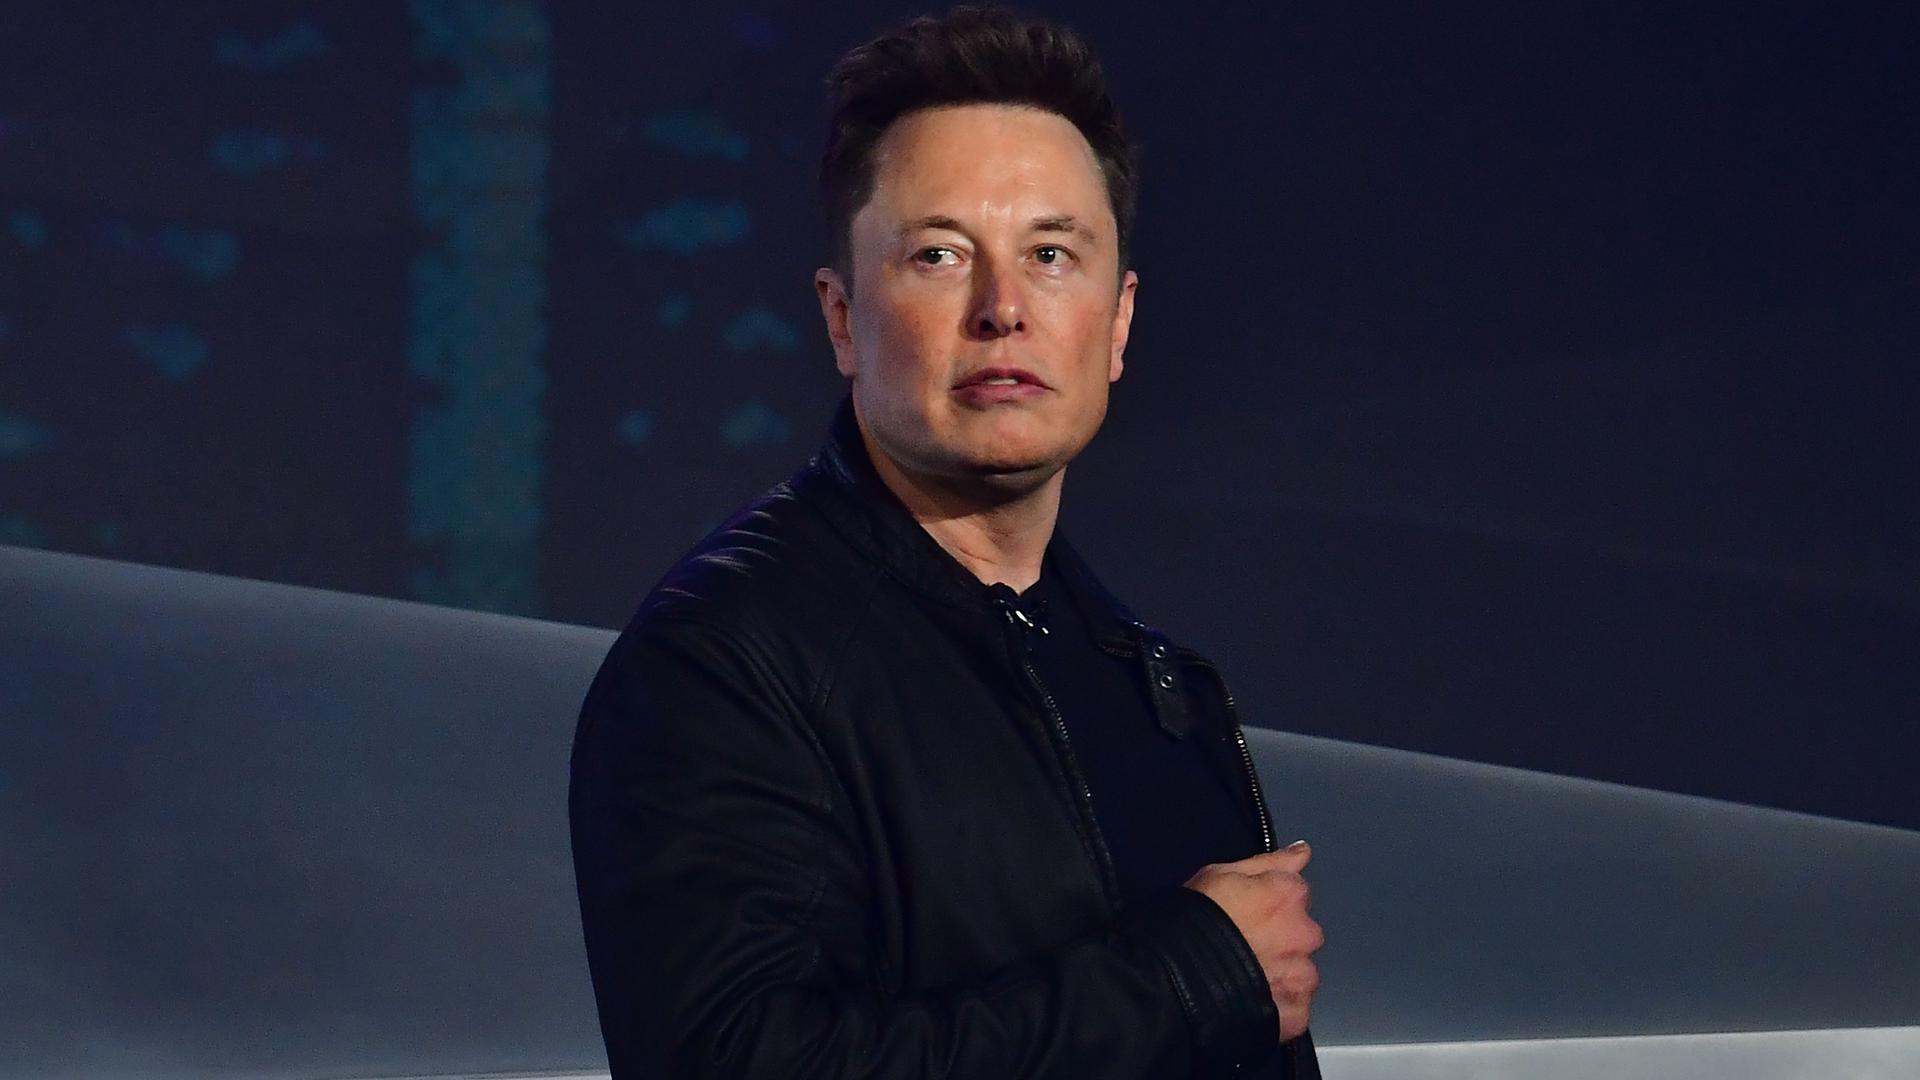 Elon Musk le CEO controversé de la société 